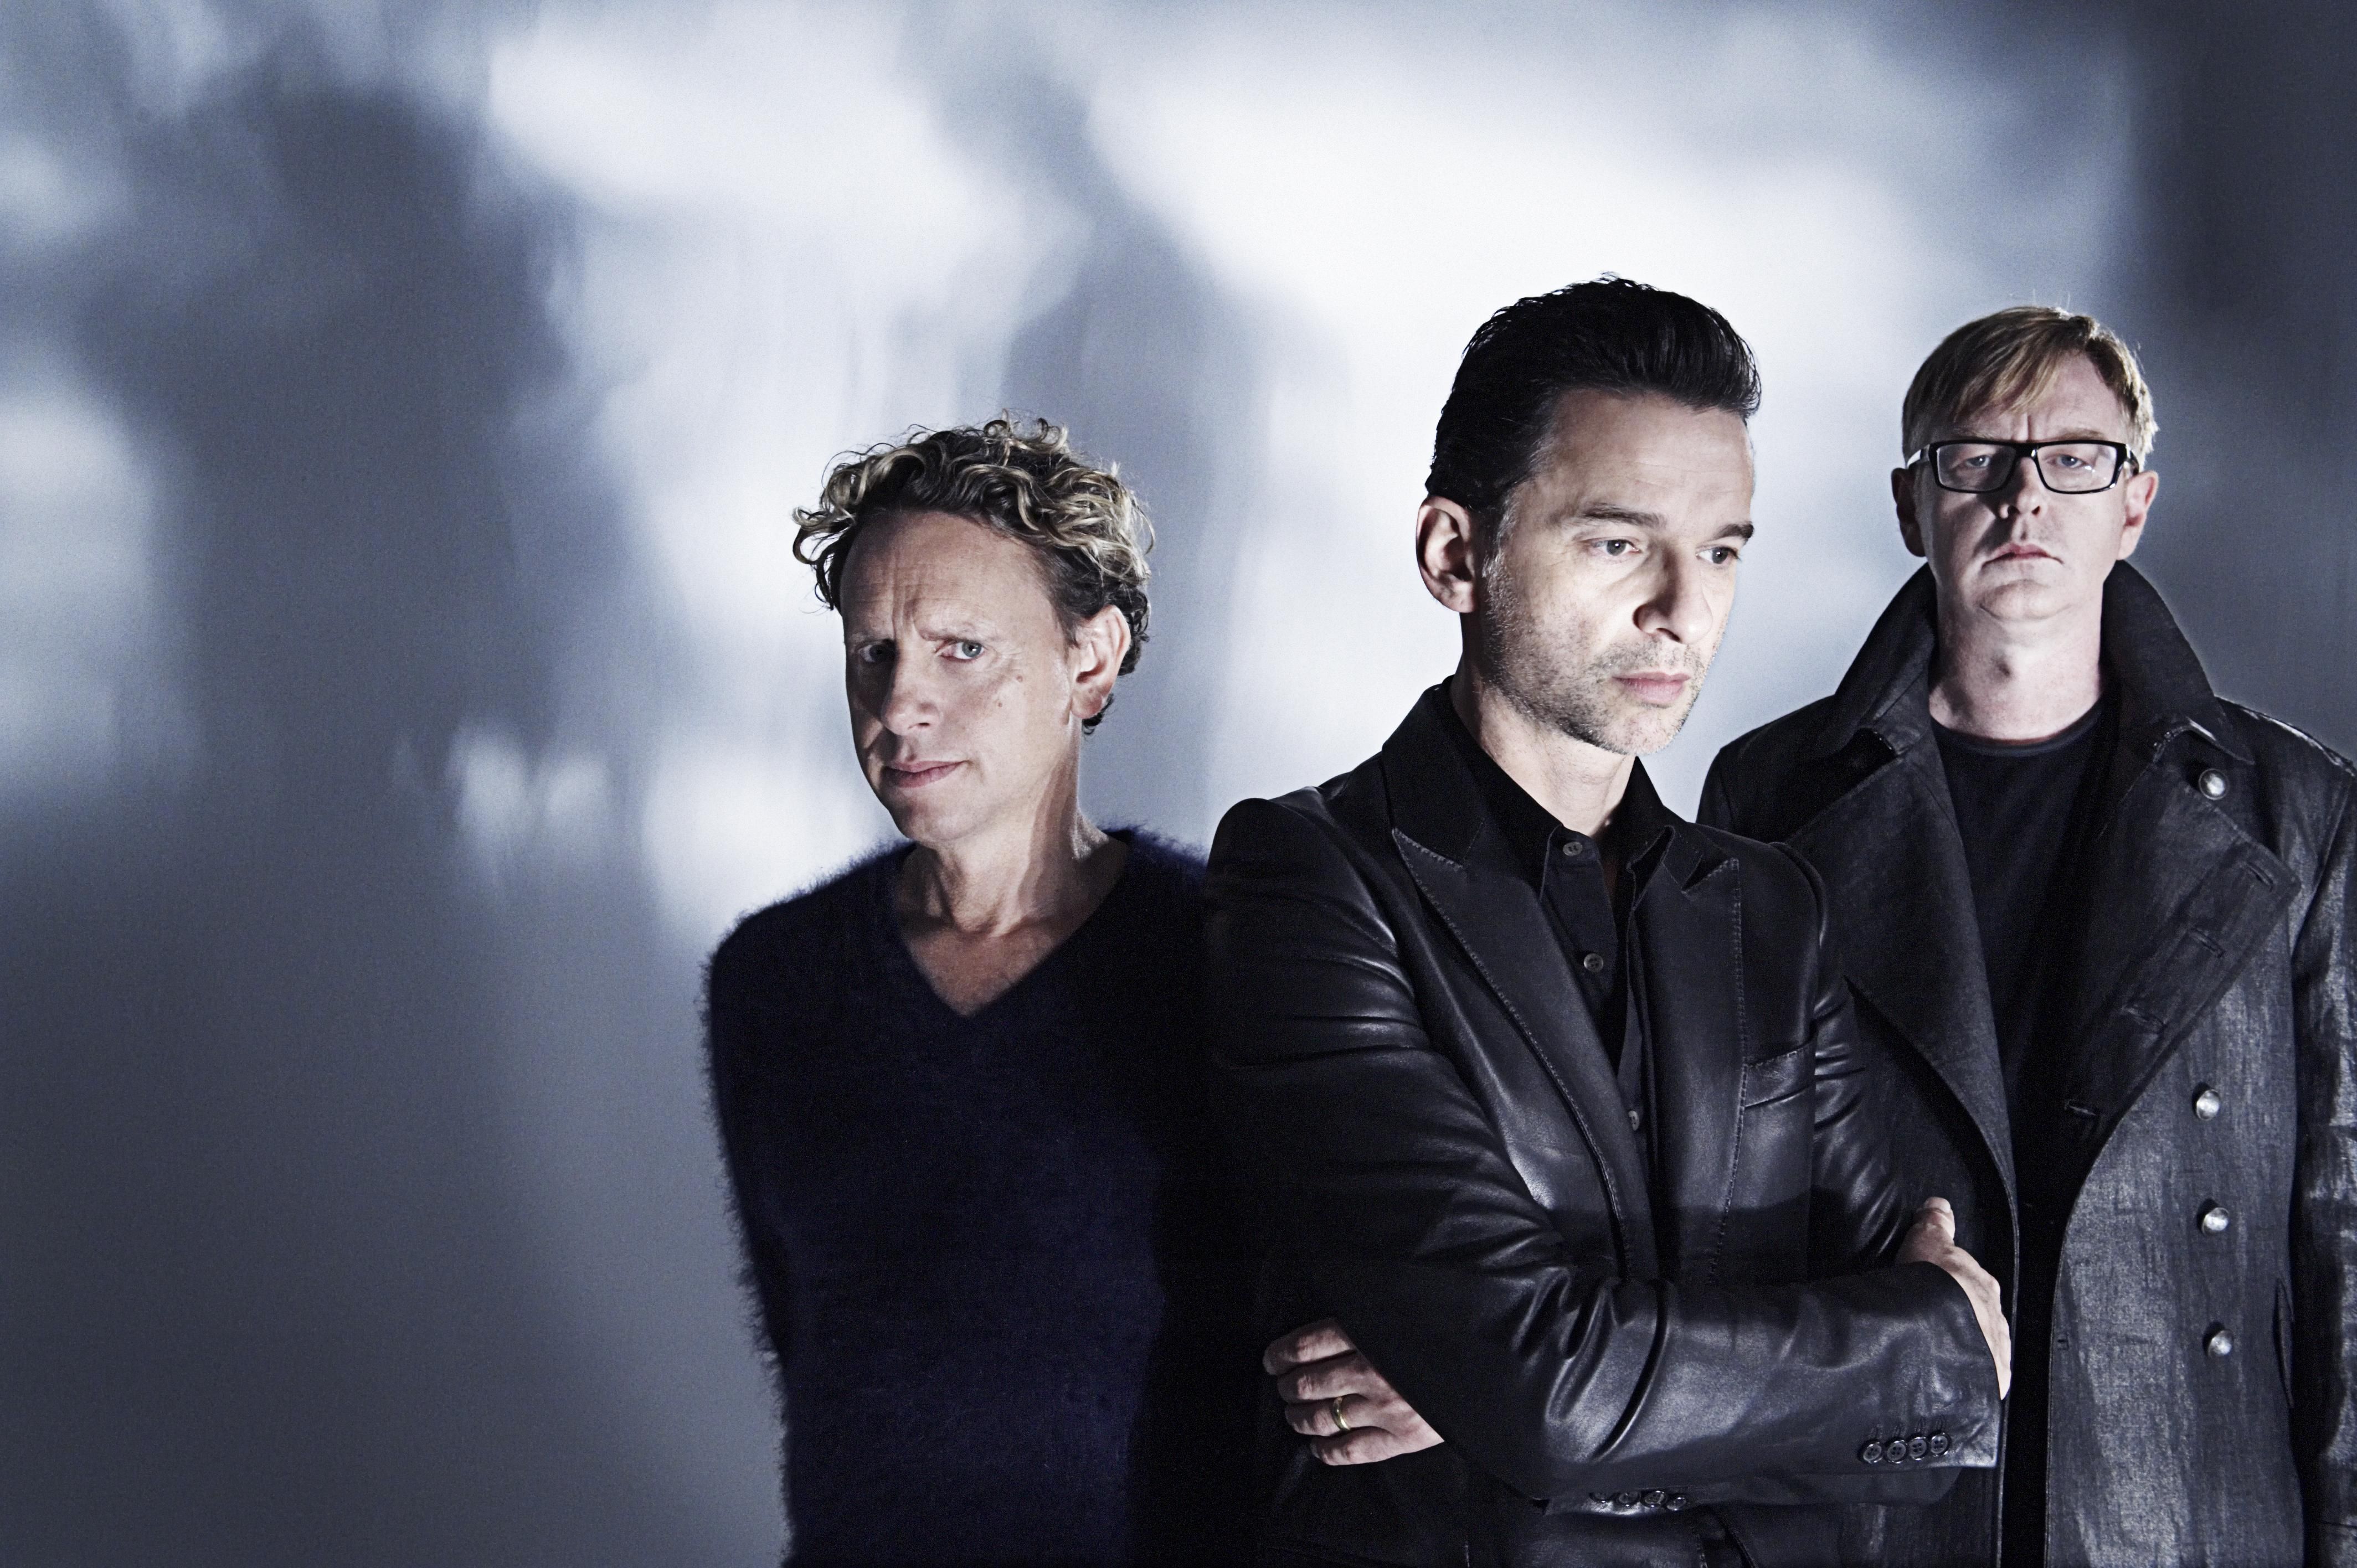 Depeche Mode HD wallpapers, Desktop wallpaper - most viewed